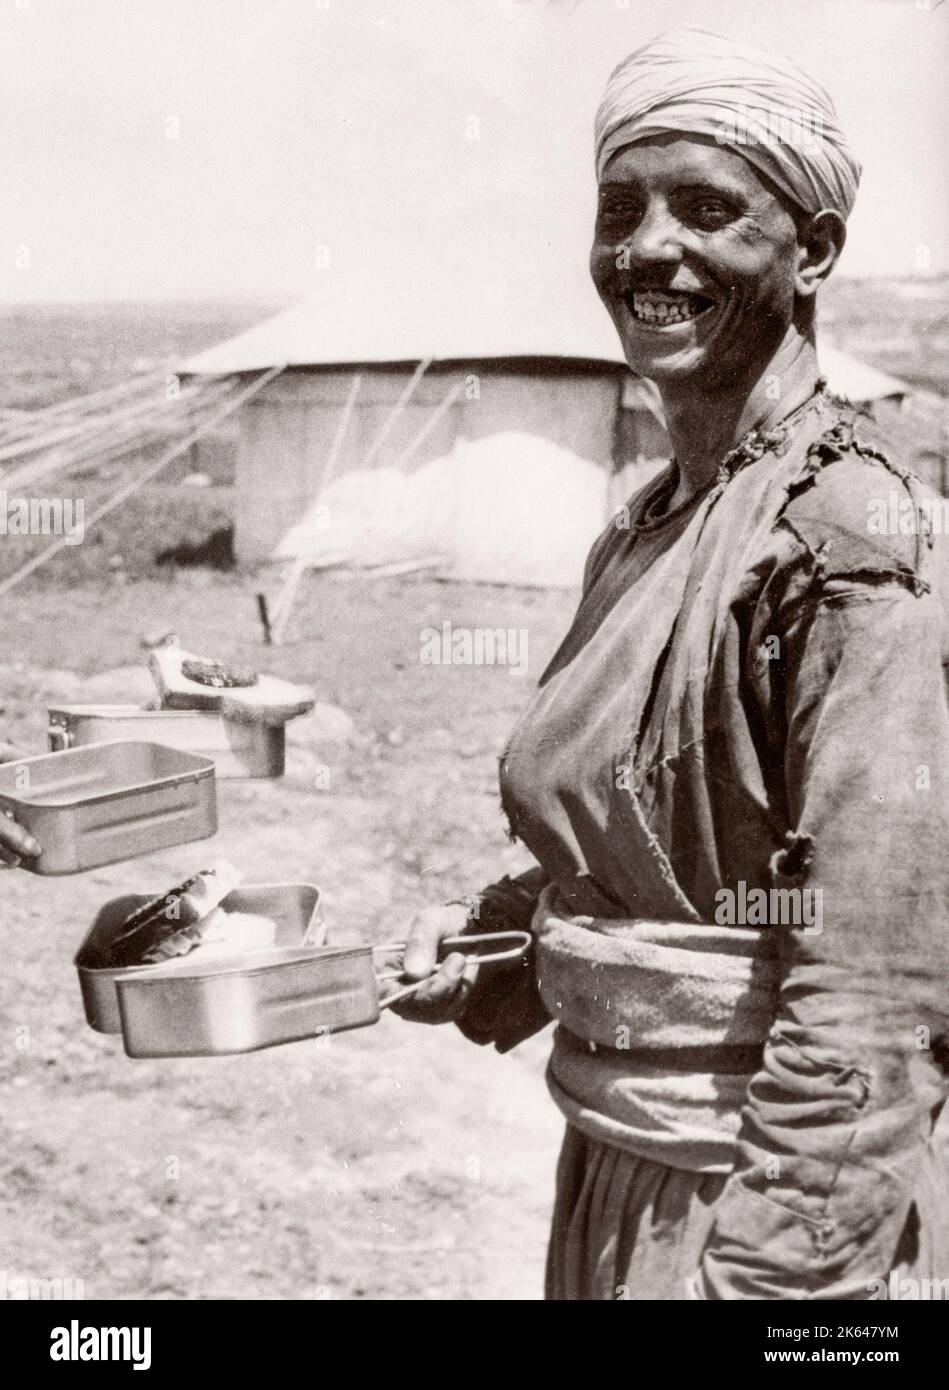 1943 Moyen-Orient Syrie - scène à Alep - recrues de l'armée britannique - recrute avec des rations Photographie d'un officier de recrutement de l'armée britannique stationné en Afrique de l'est et au Moyen-Orient pendant la Seconde Guerre mondiale Banque D'Images